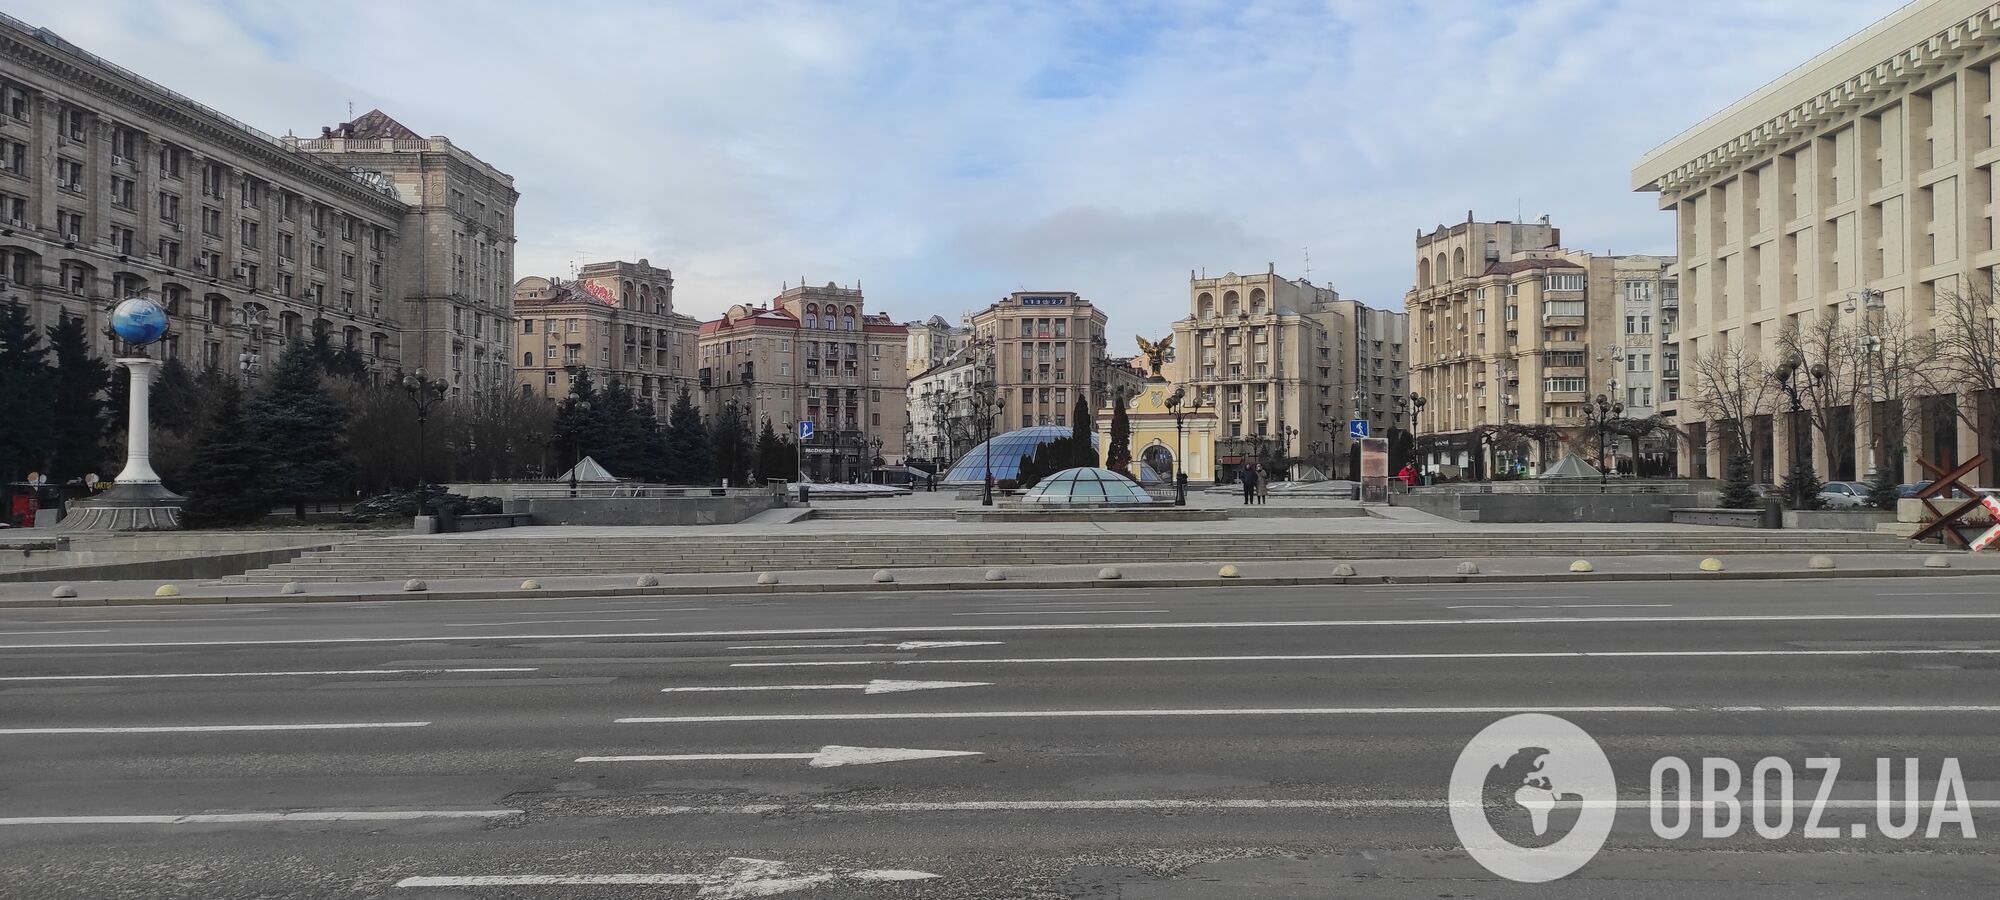 У мережі показали, який вигляд мала будівля Київської міської думи на Майдані Незалежності. Історичні фото